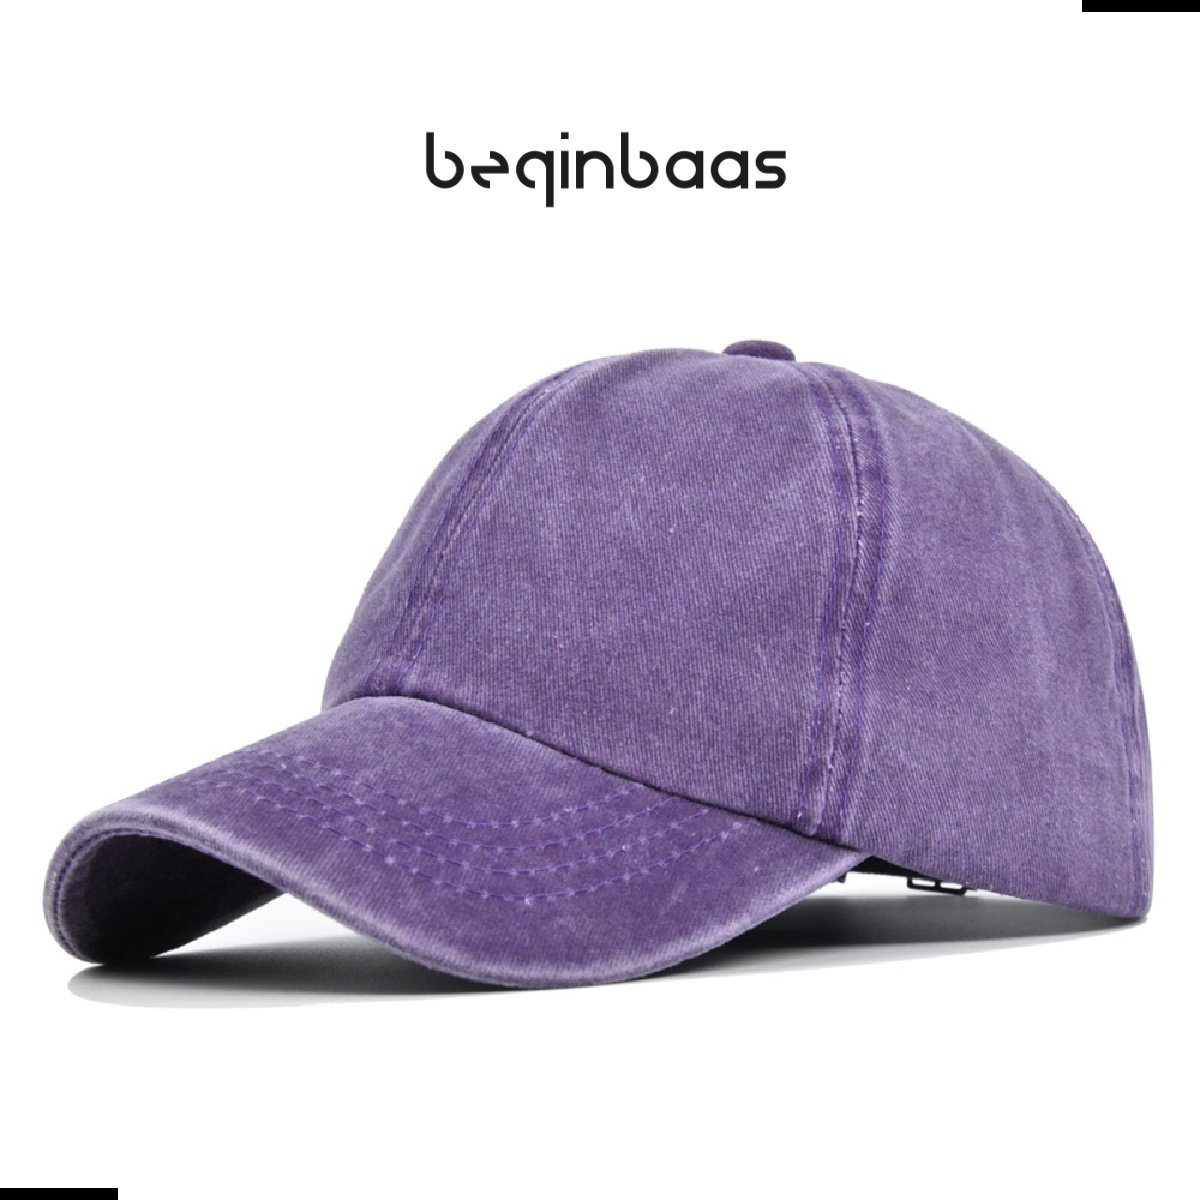 Legend Cap Basic Kids - beginbaas - Skinny Dye - Purple - Paarse Pet